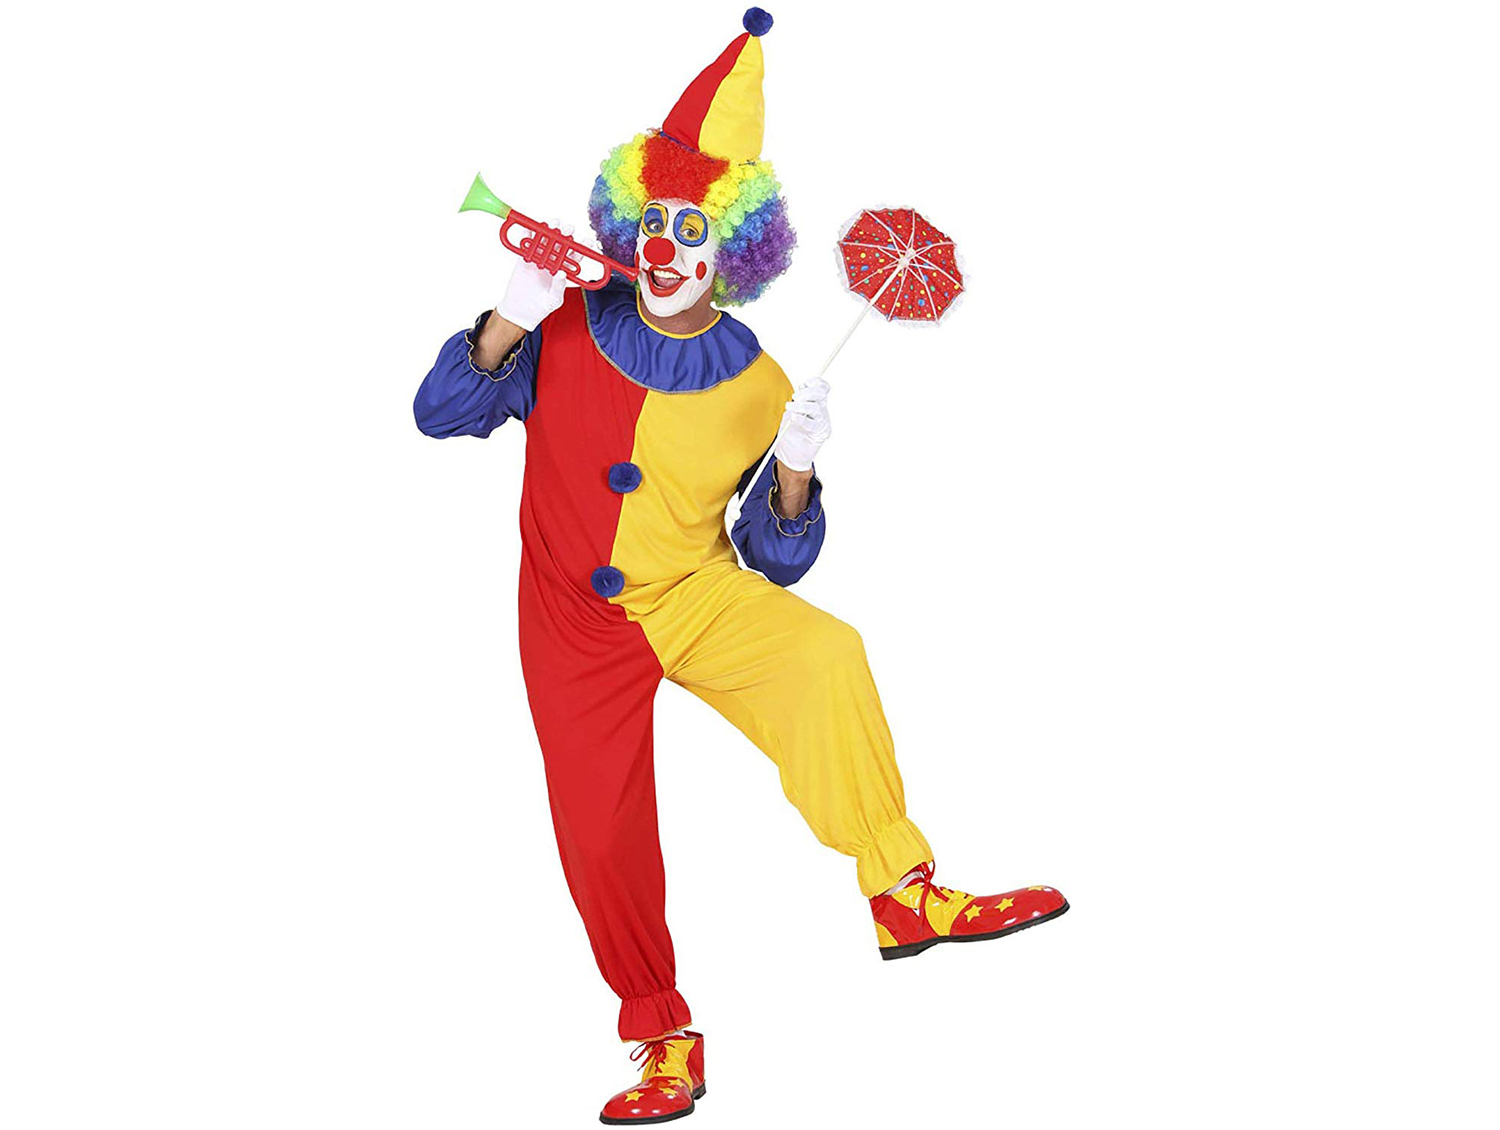 
                                    
                                Costumi di Carnevale più originali, da Mercoledì Addams a Willy Wonka e Super Mario